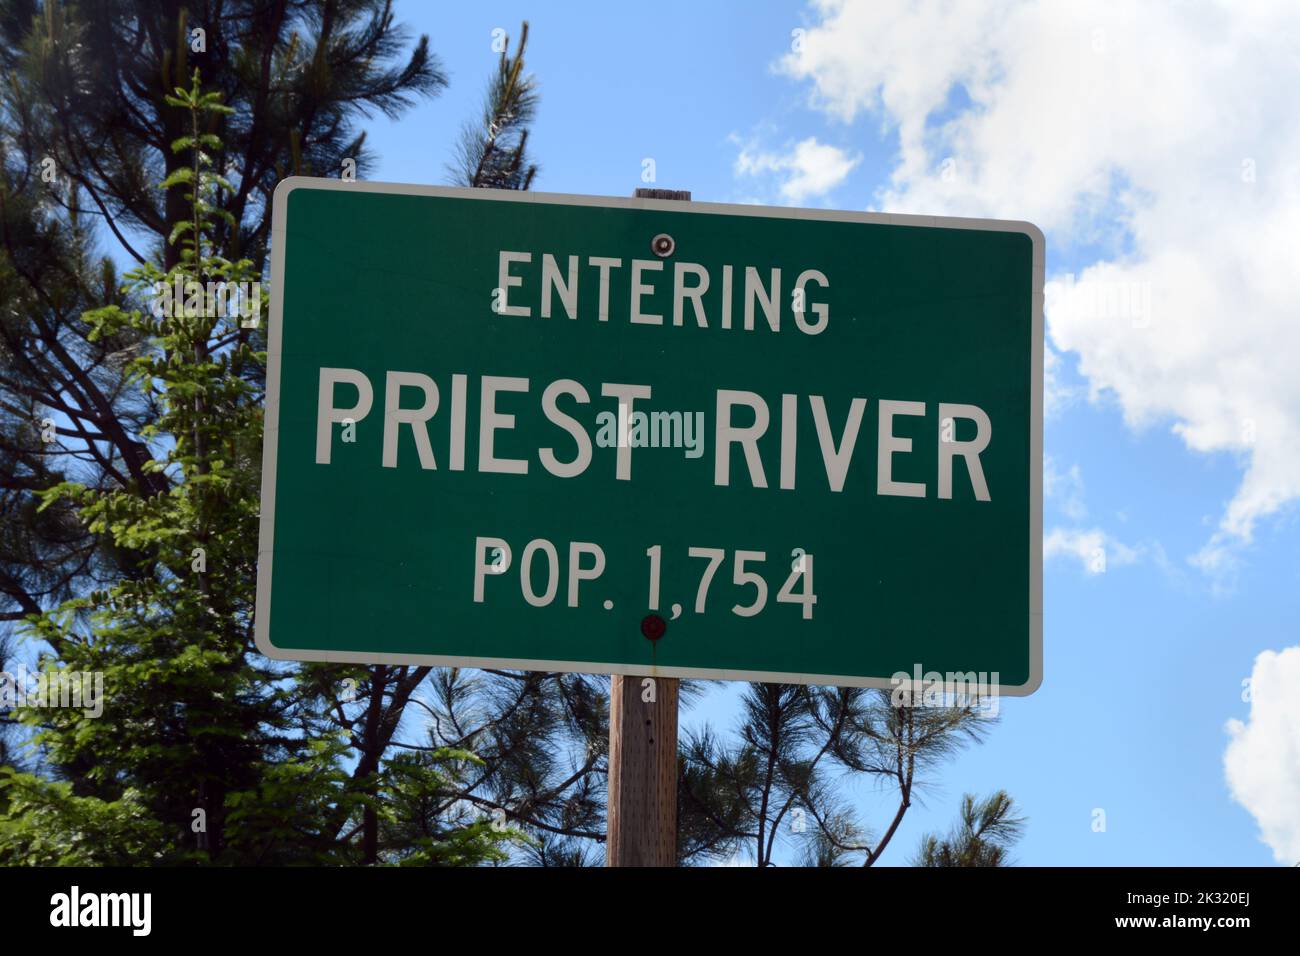 Ein Straßenschild an der Stadtgrenze von Priest River, Idaho, einer kleinen Gemeinde im Bonner County, im Nordwesten von Idaho Panhandle, USA. Stockfoto